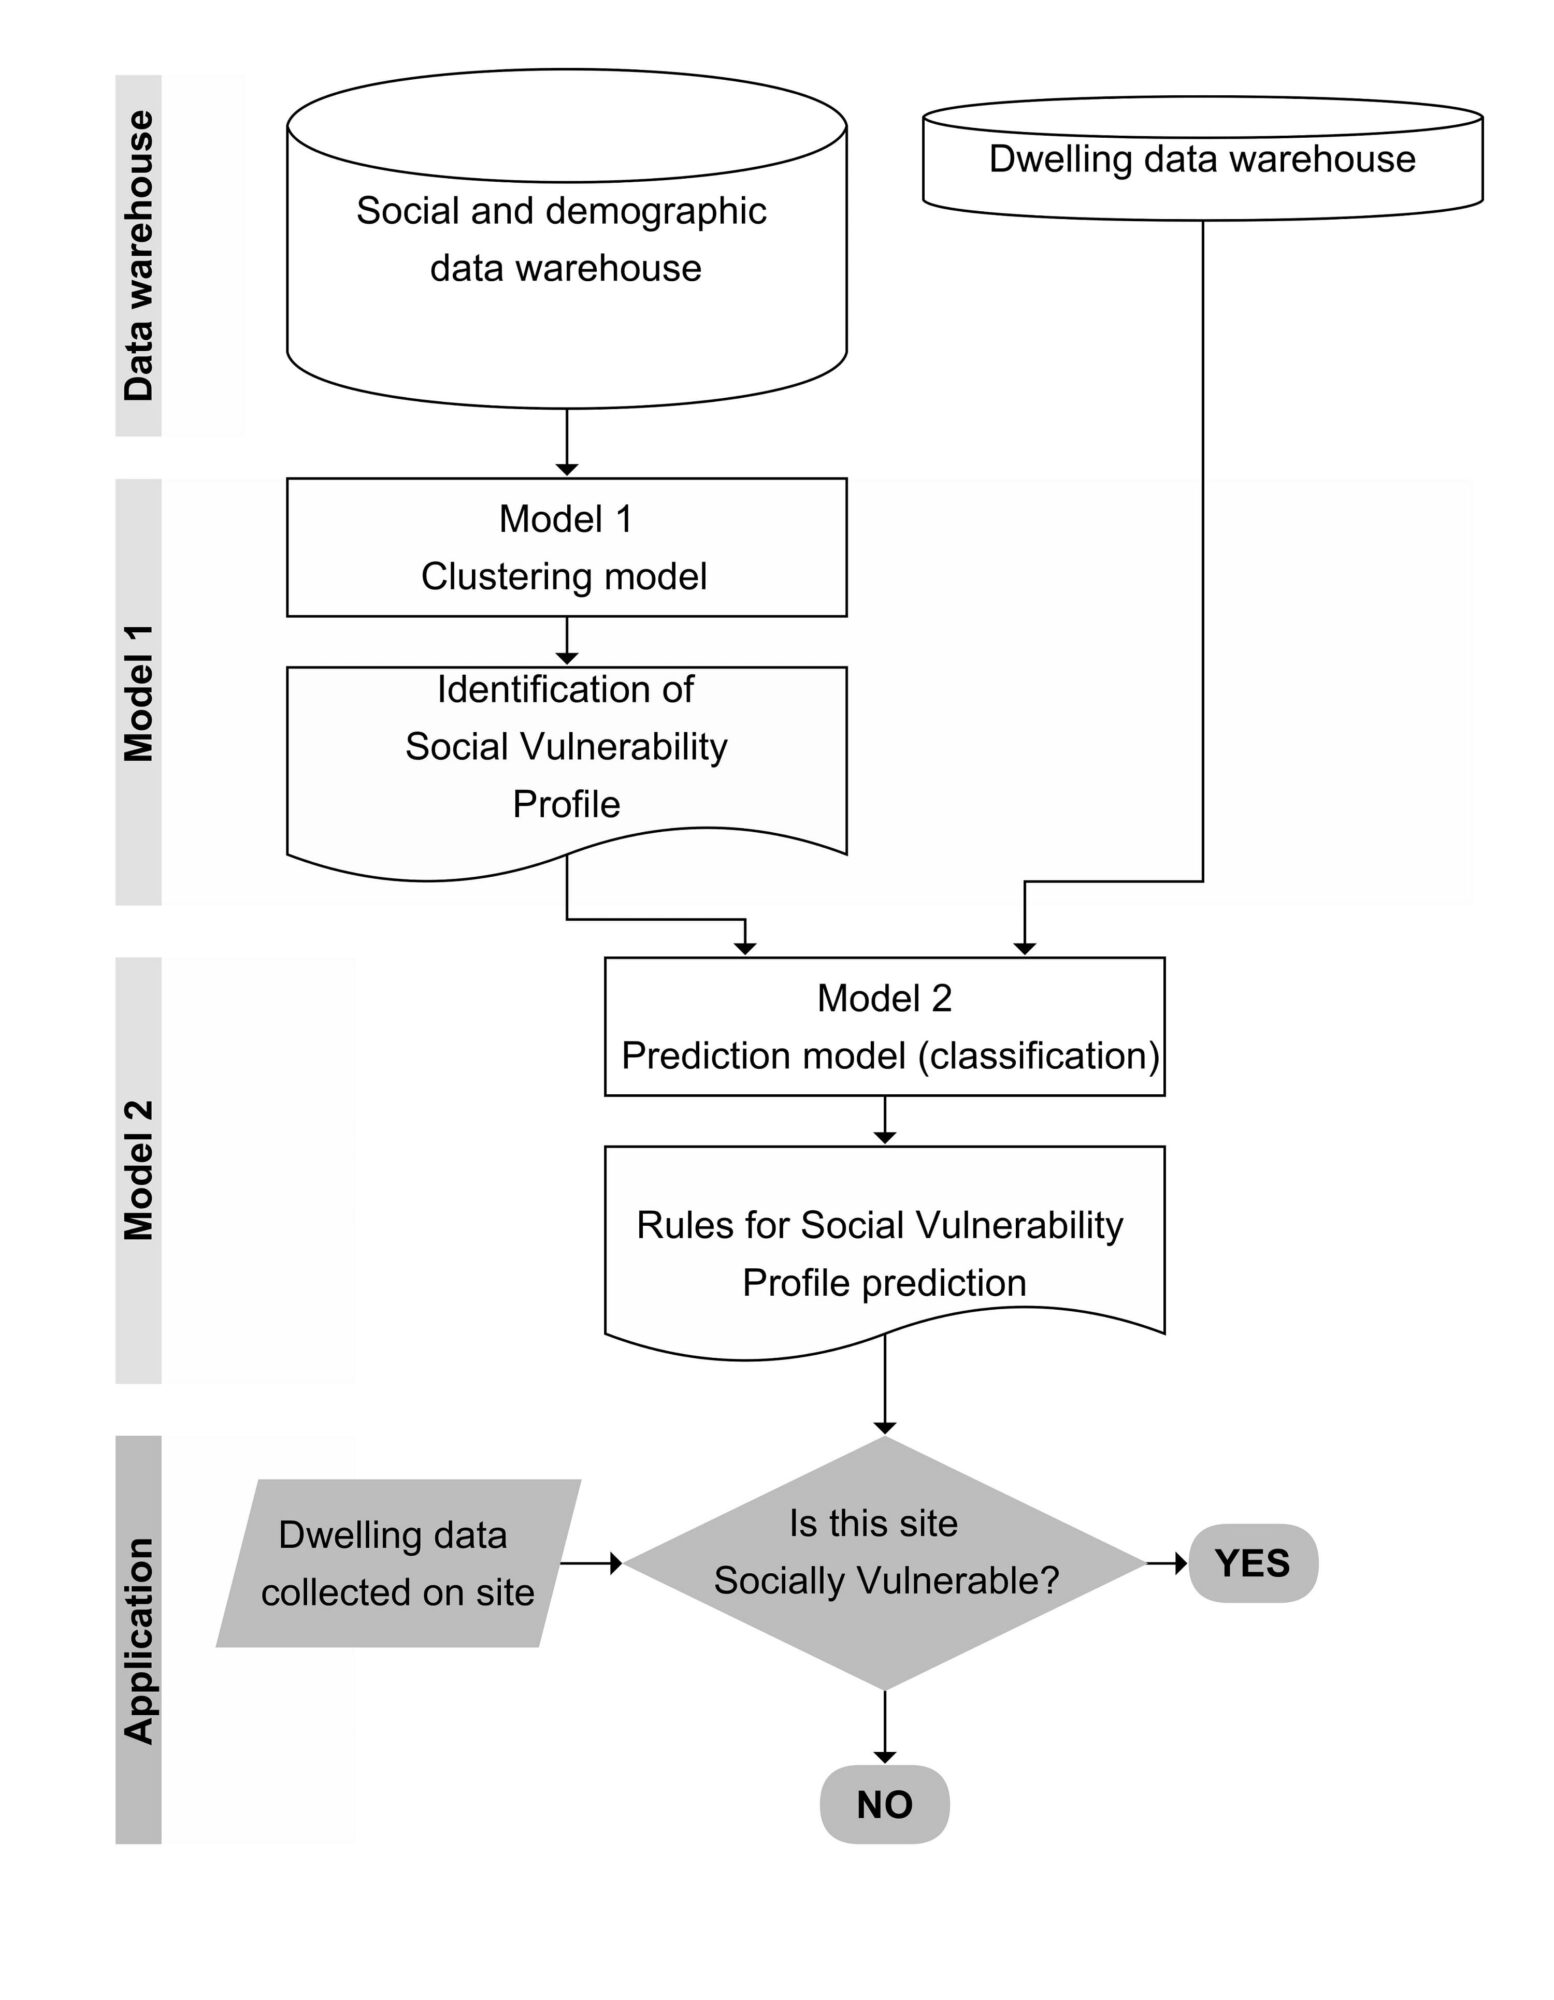 Metodología para realizar el modelado de datos que permite generar un arbol de decisión Usando la Inteligencia Artificial para predecir la Vulnerabilidad social